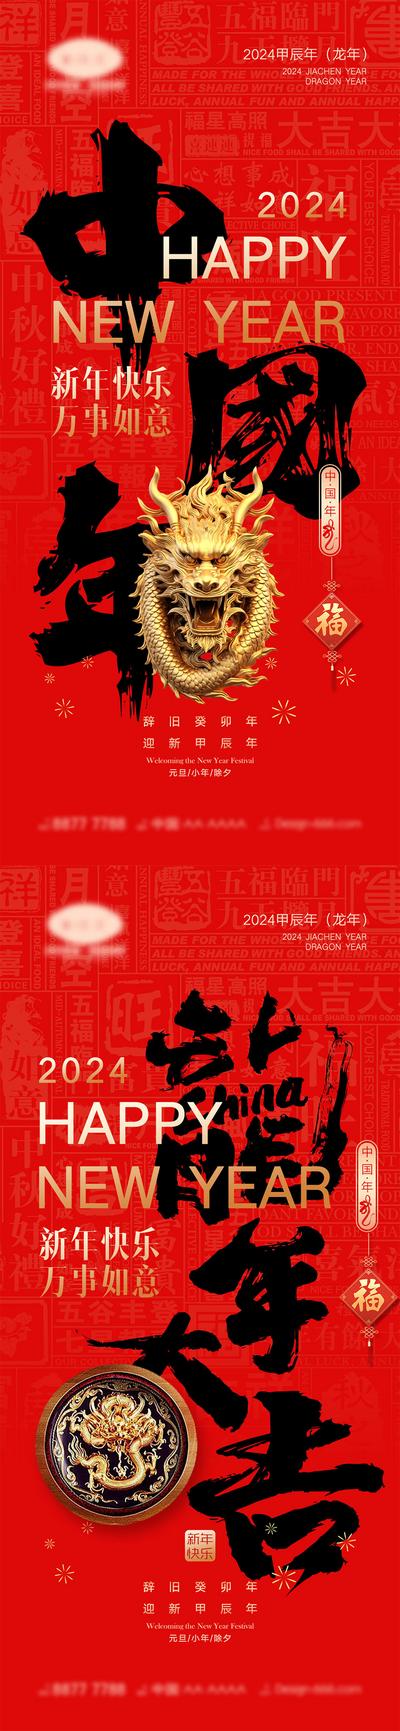 南门网 海报 中国传统节日 红包 新年 小年 除夕 团圆 家人 过年 2024 龙年 春节 元旦 喜气 红色 中国年